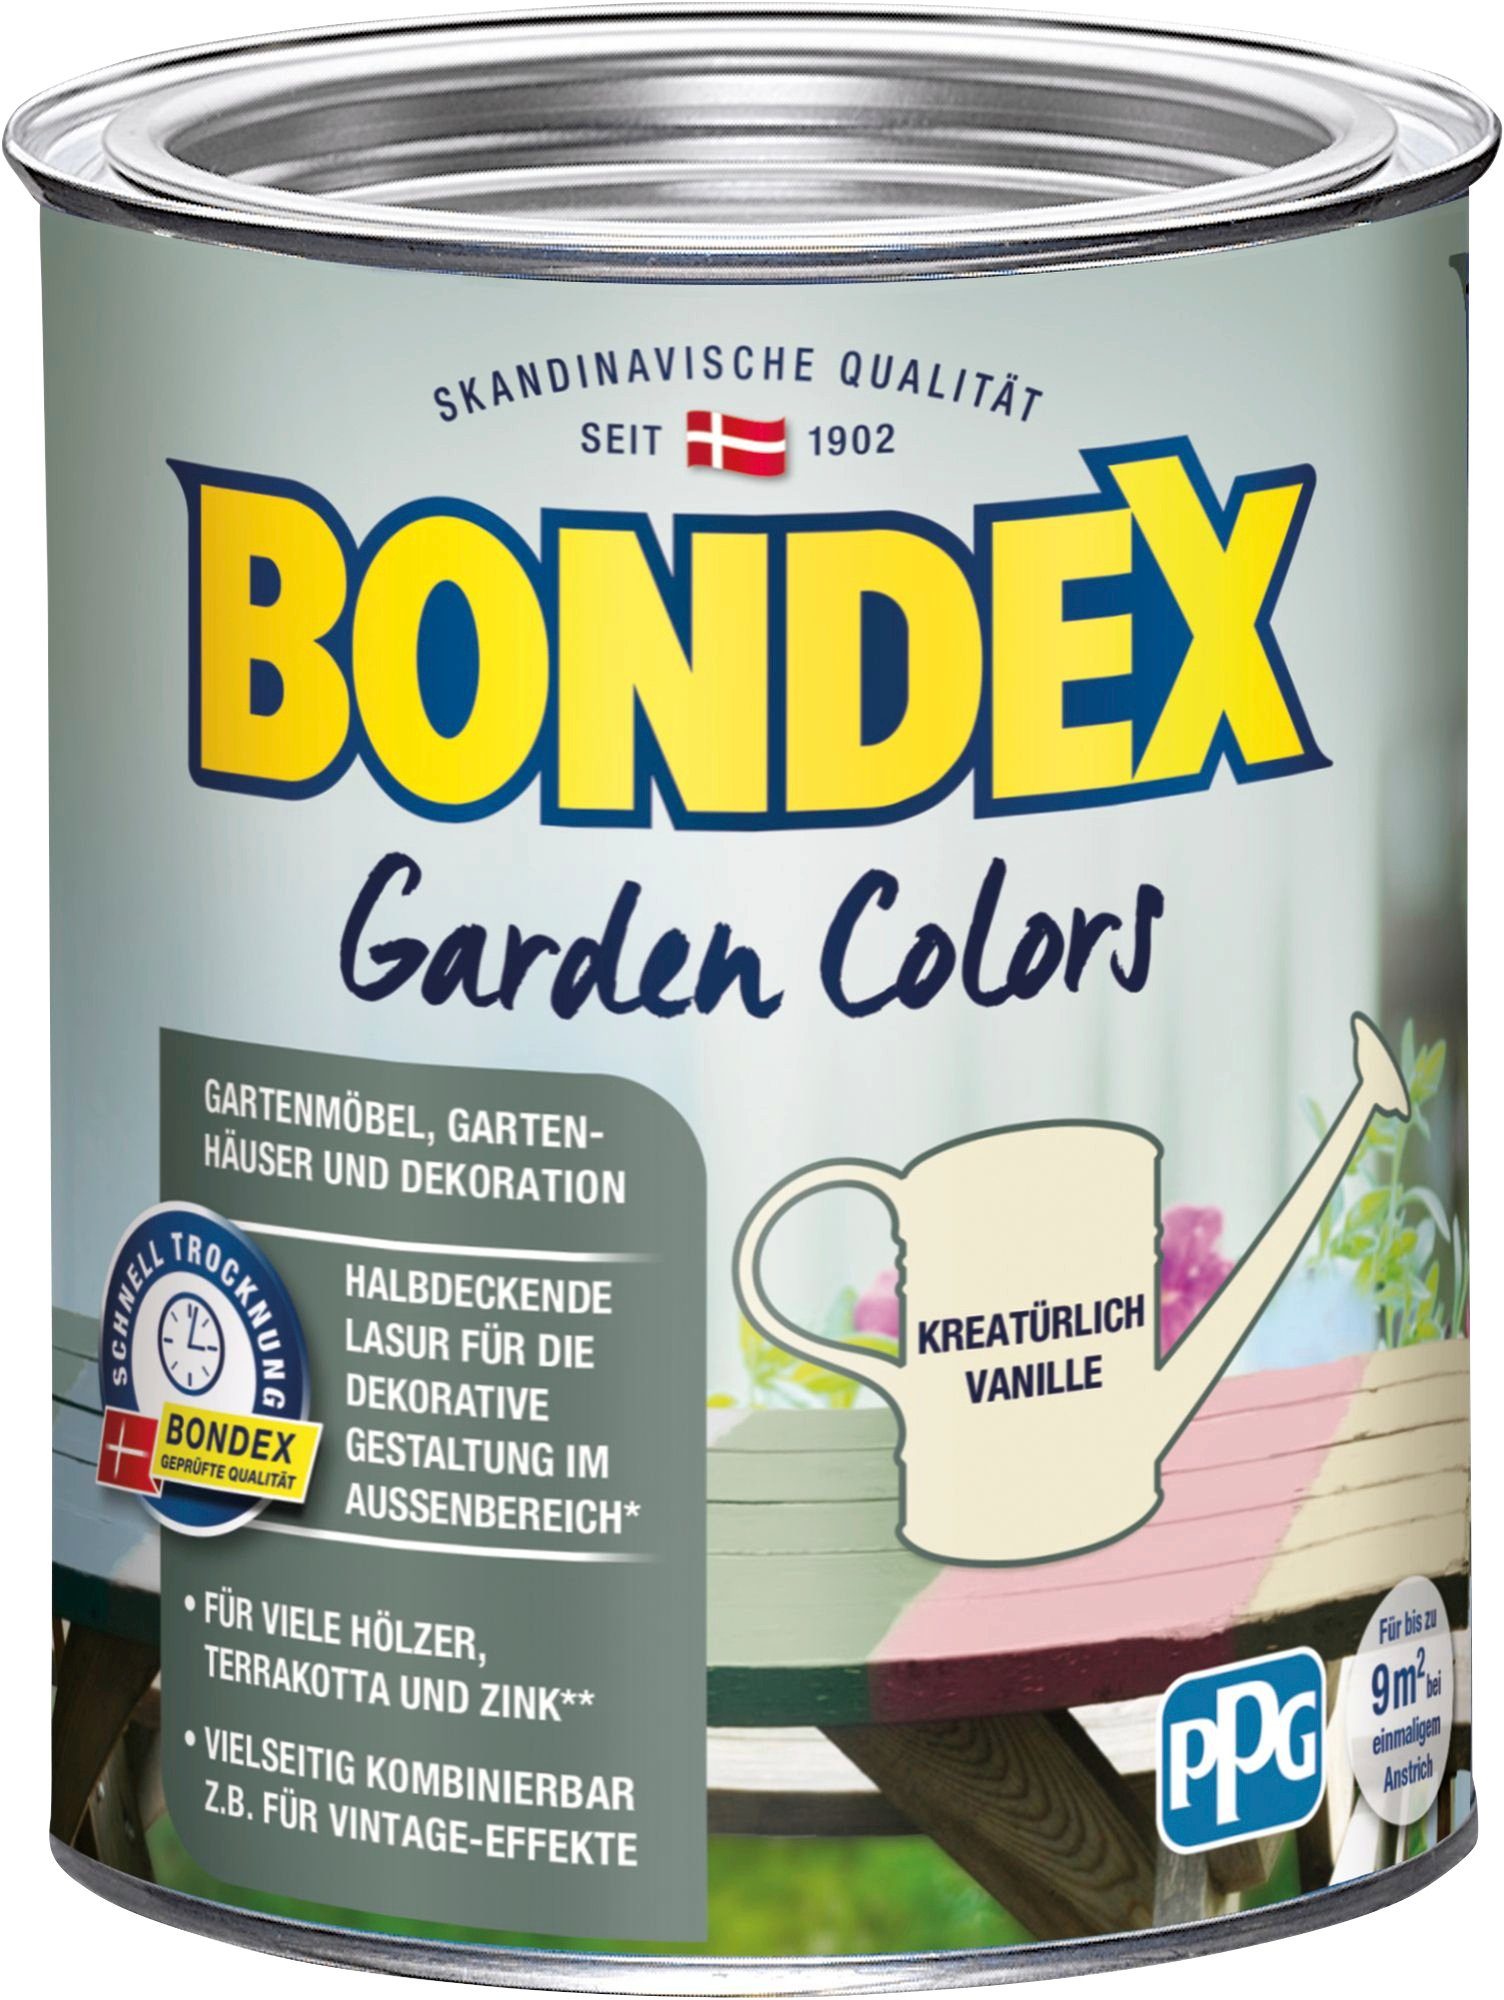 Bondex Wetterschutzfarbe GARDEN COLORS, Behagliches Grün, 0,75 Liter Inhalt Kreatürlich Vanille